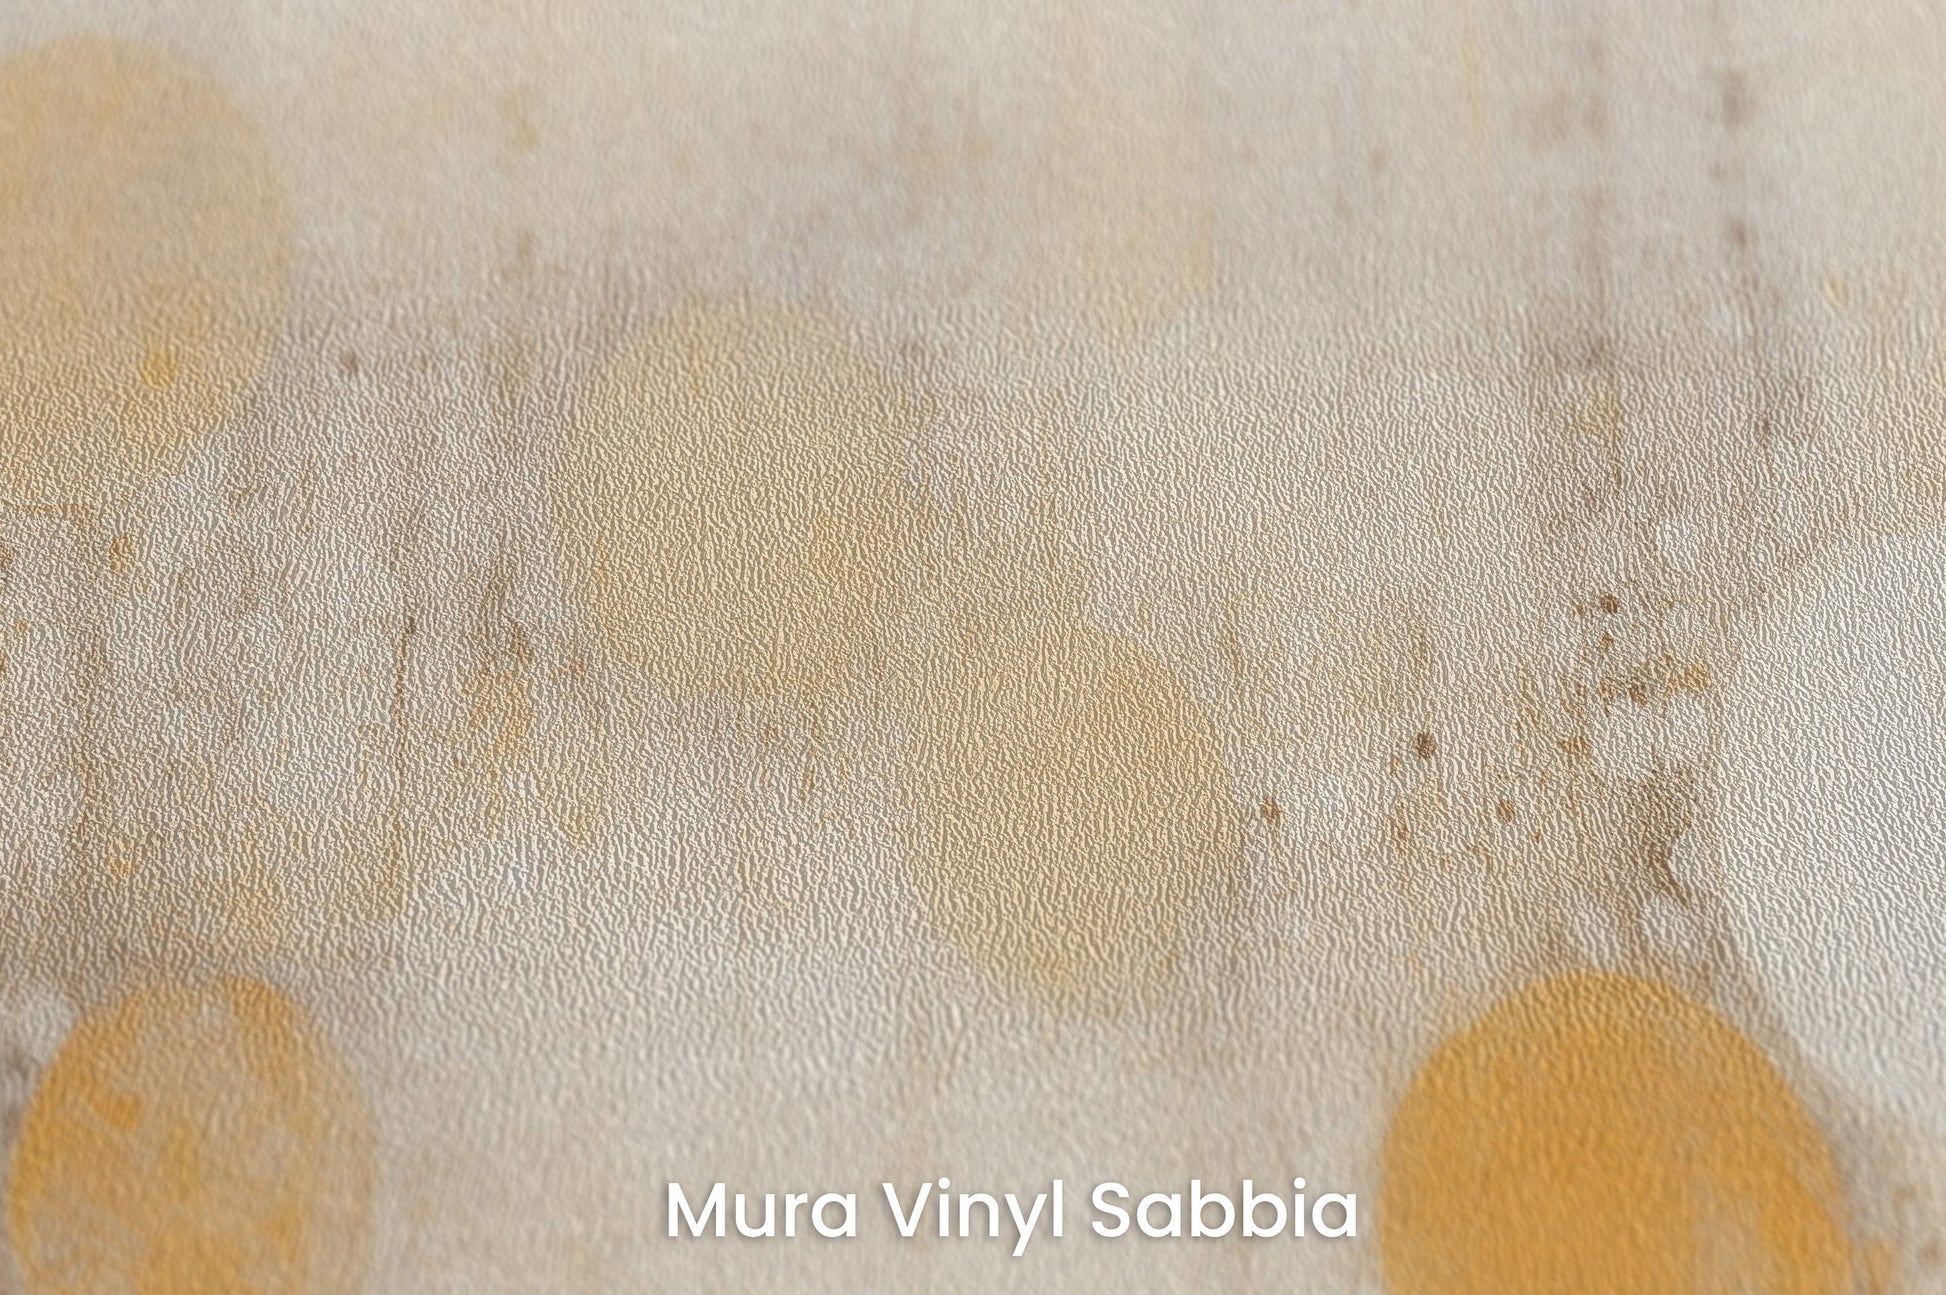 Zbliżenie na artystyczną fototapetę o nazwie SOLAR WHISPERS na podłożu Mura Vinyl Sabbia struktura grubego ziarna piasku.